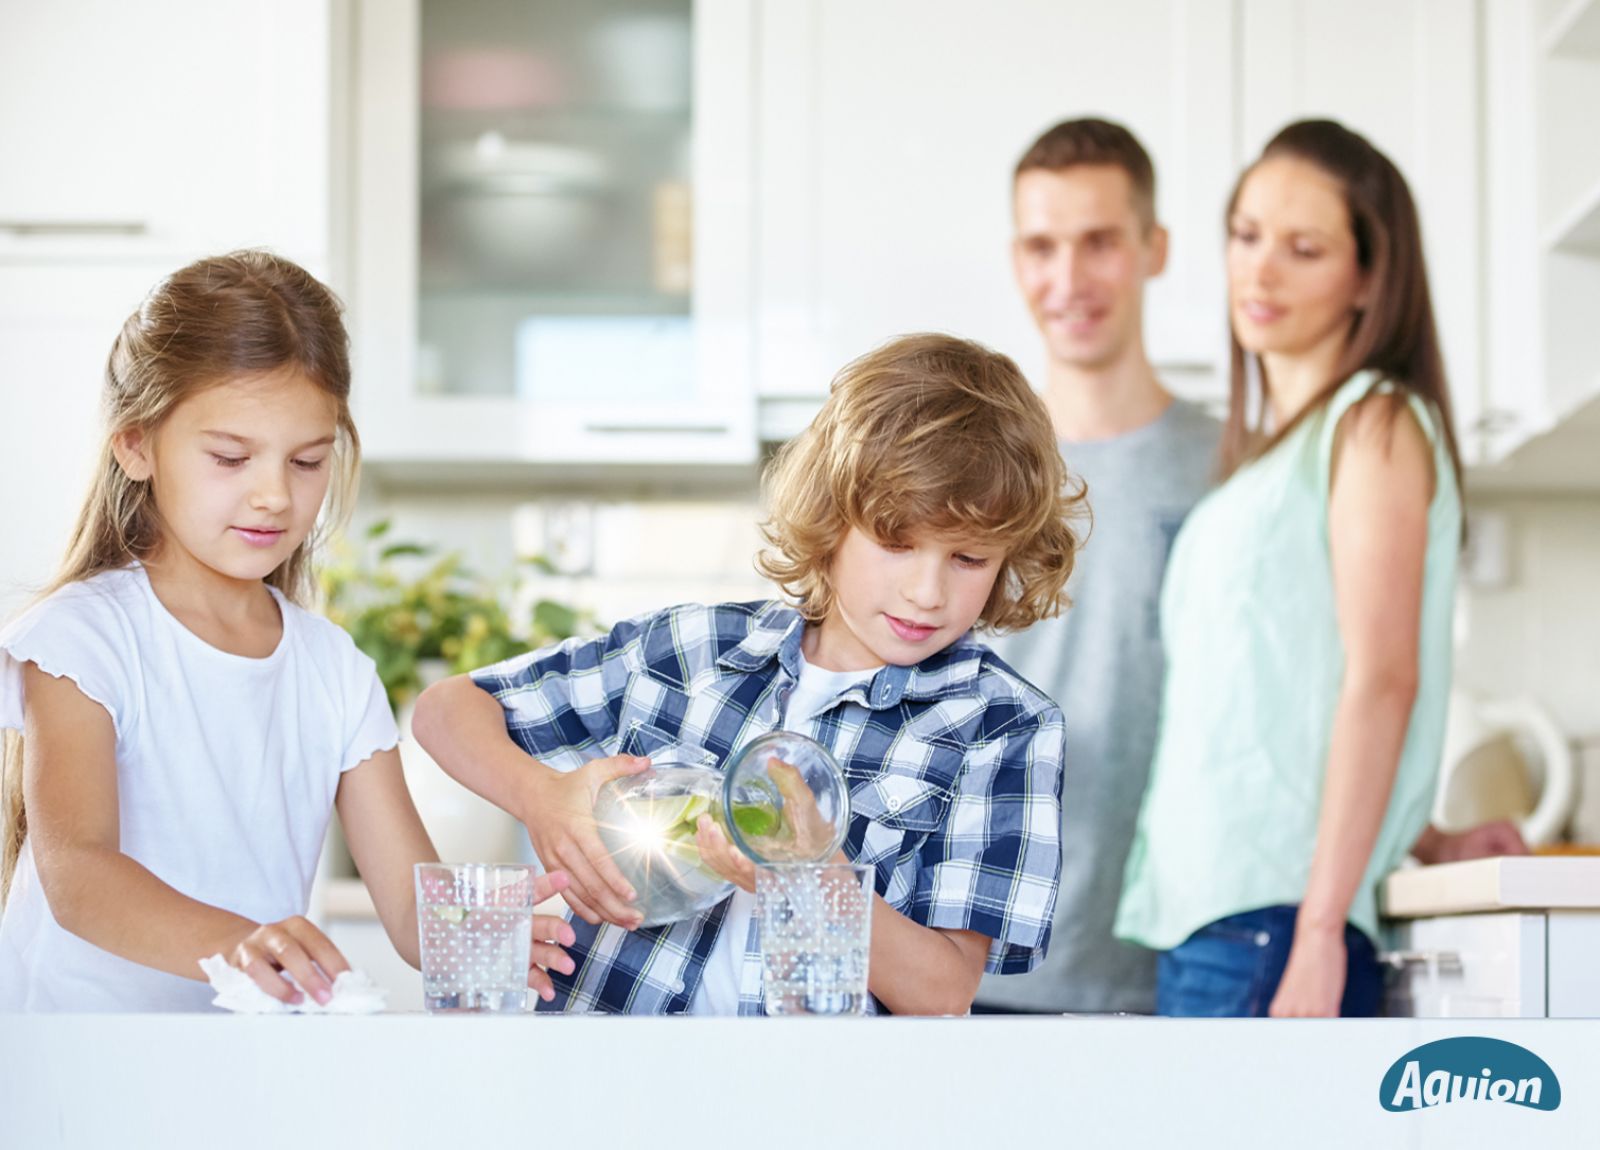 Ein Junge gießt Wasser aus einer Karaffe in ein Glas. Seine Schwester steht neben ihm und schaut zu. Die Eltern stehen im Hintergrund und schauen auf die Kinder.